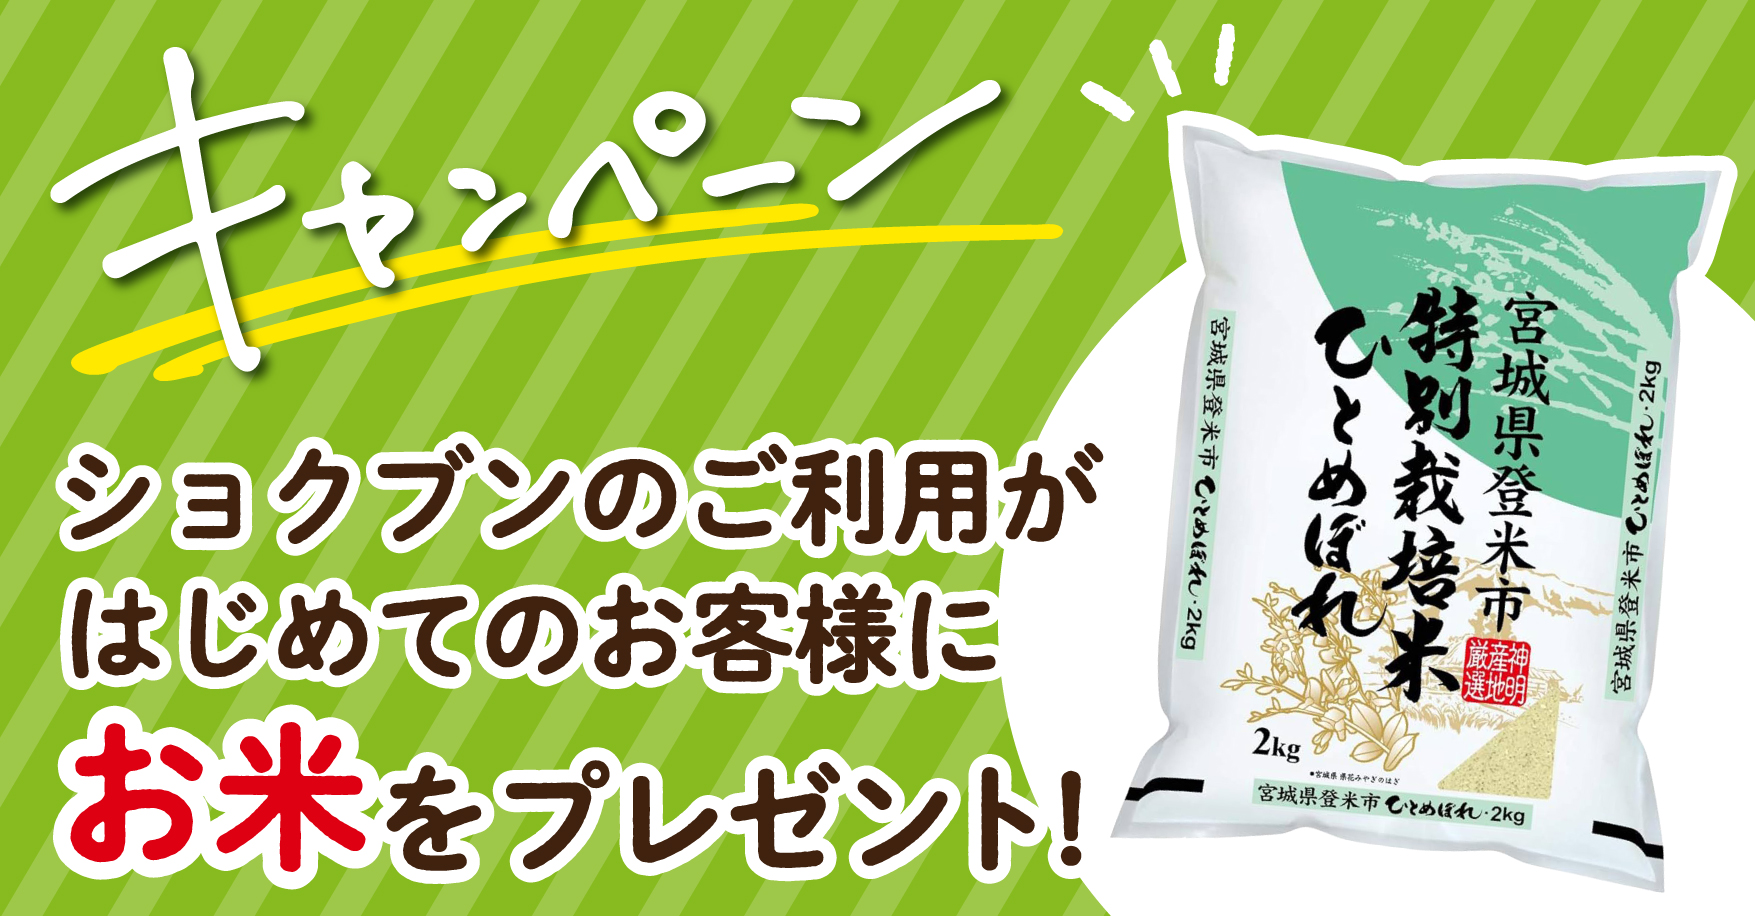 【初めてご利用の方限定】新規ご利用でお米がもらえるキャンペーン